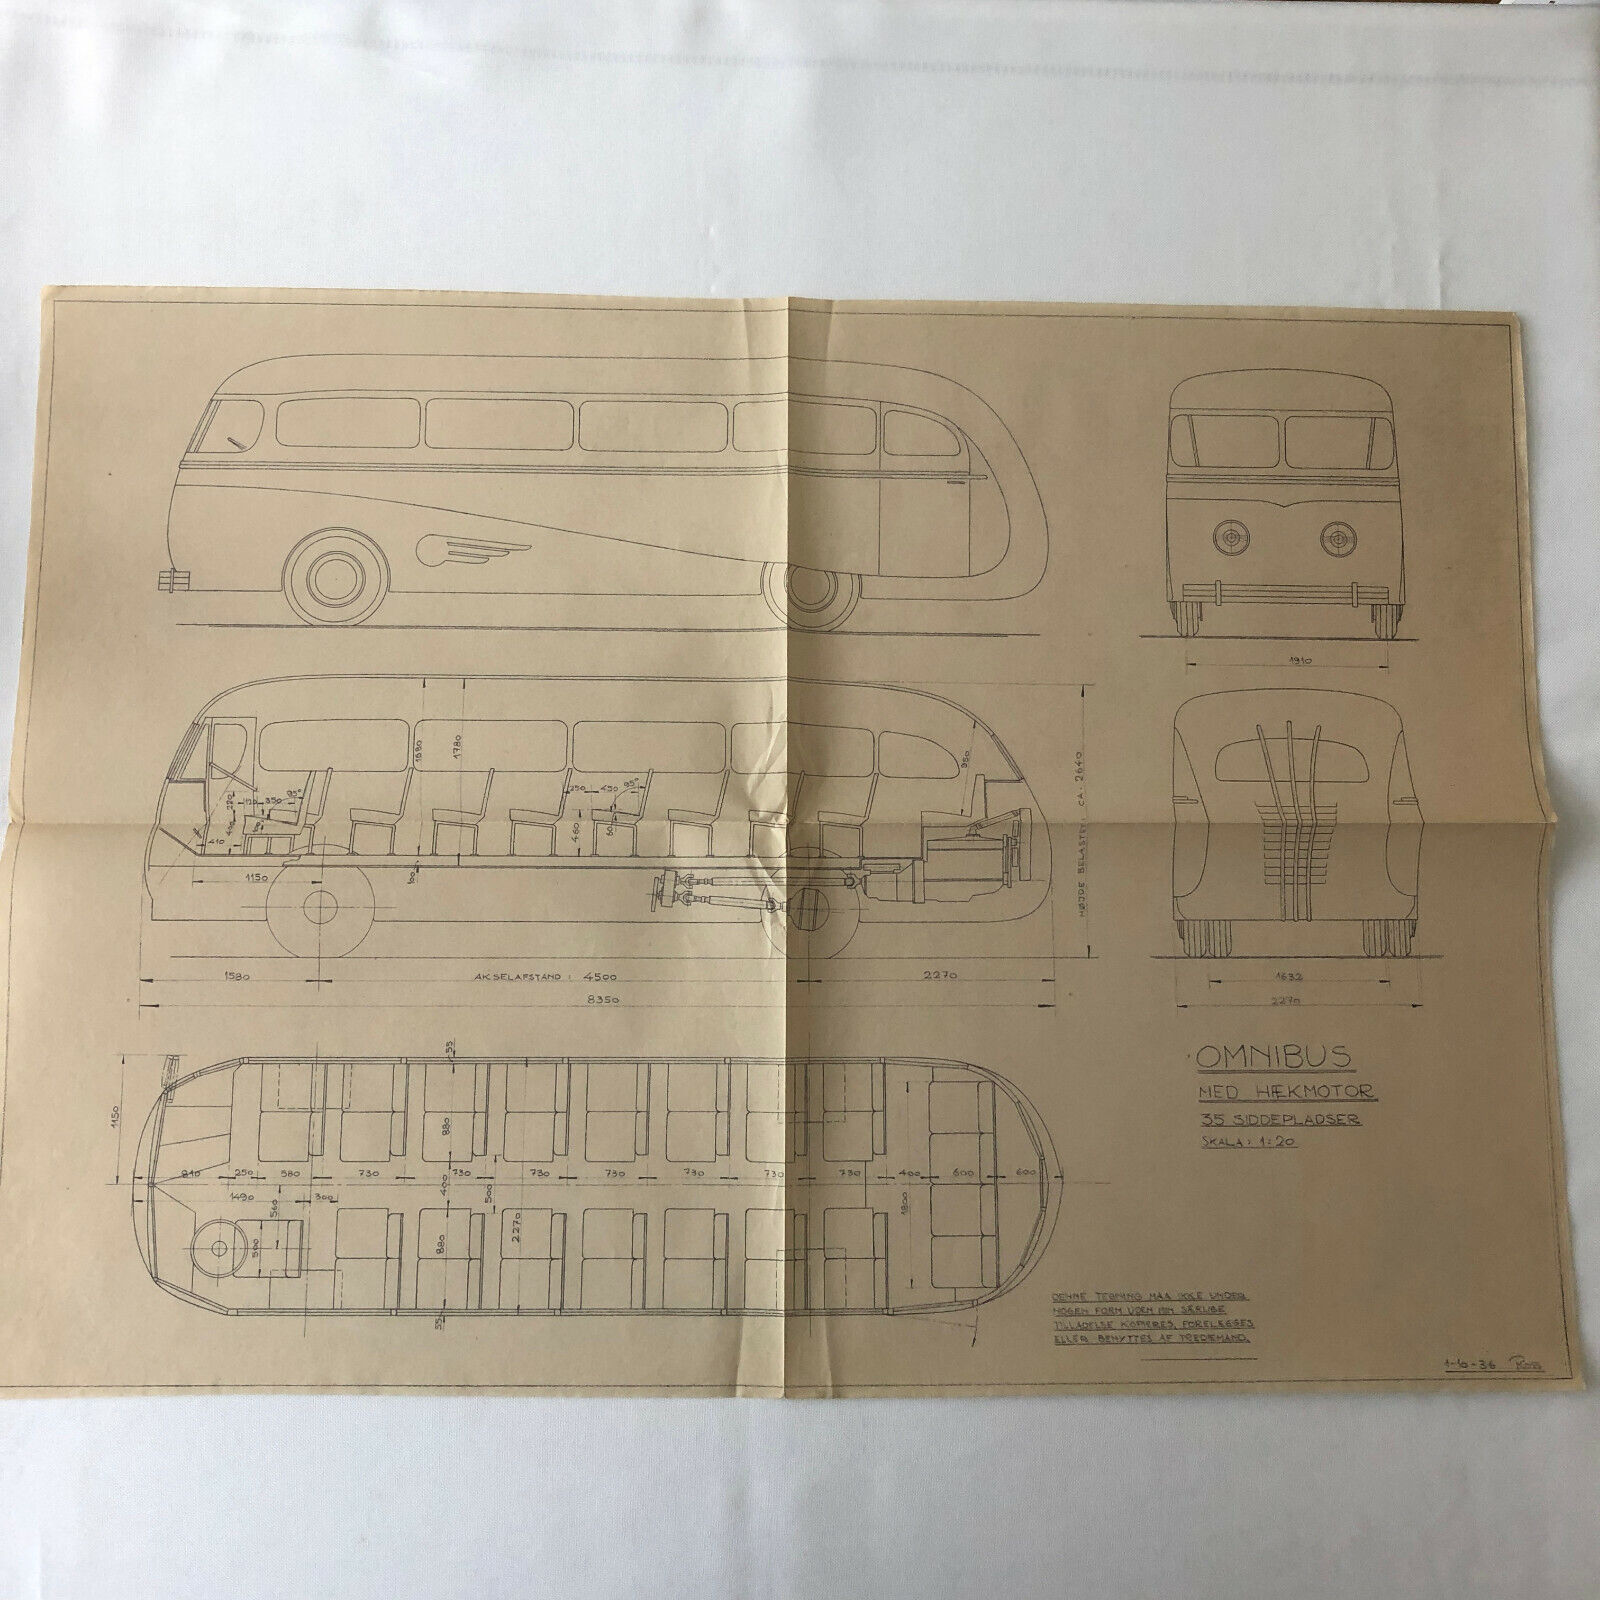 1936 Coachbuilder Bus Design Blueprint Rendering Blue Print Coach Bus Truck